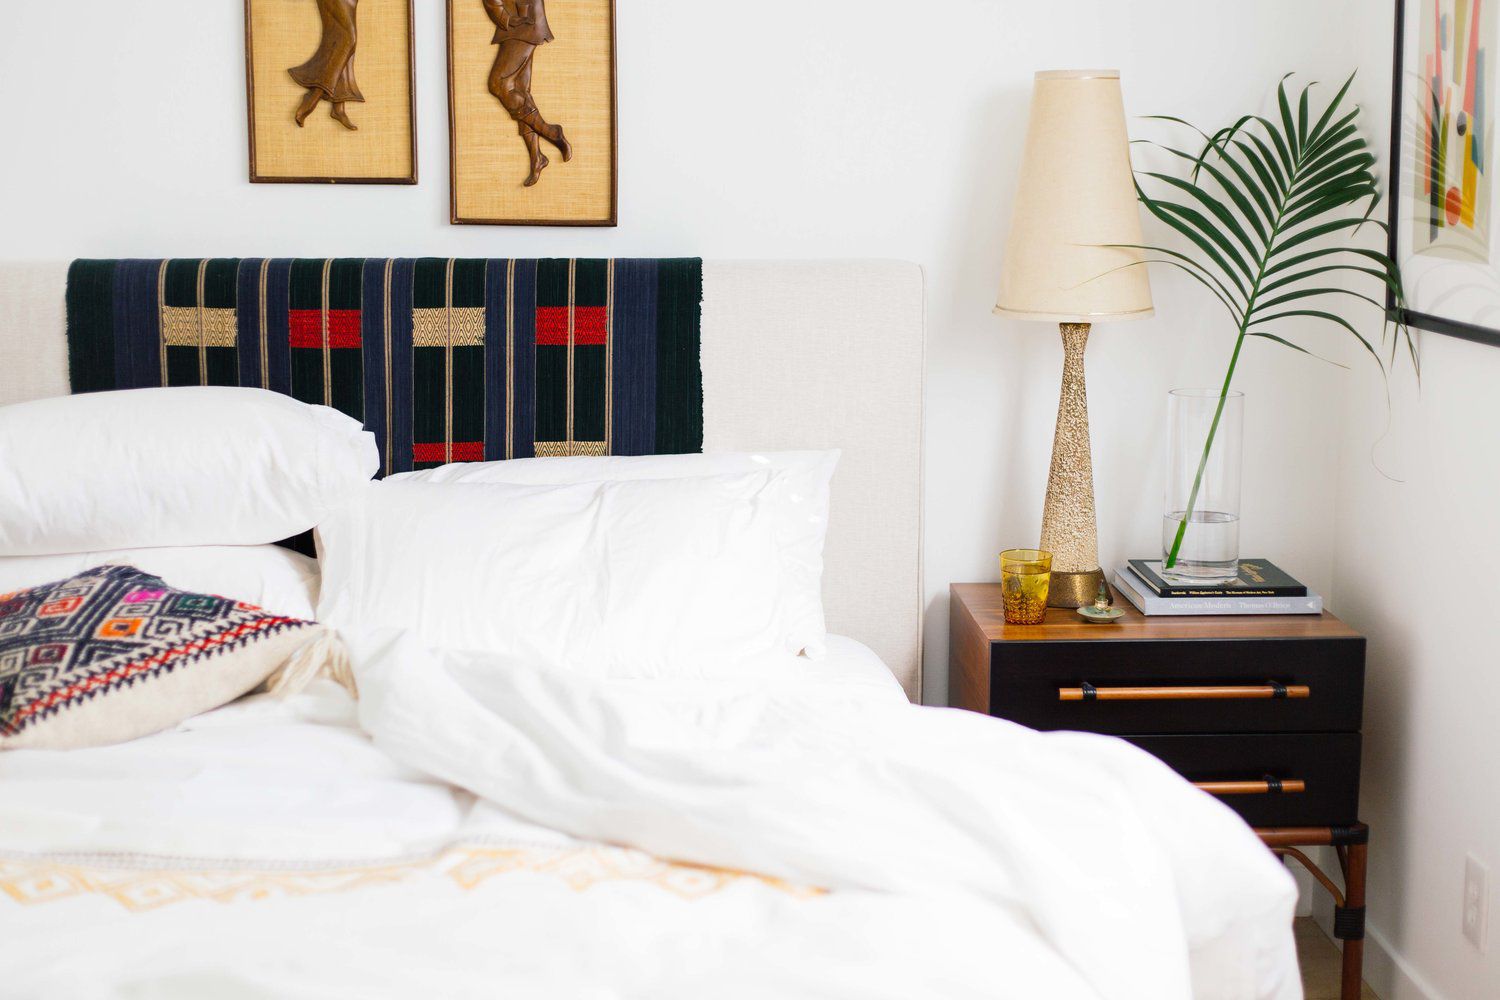 Budget bedroom decorating blog tips